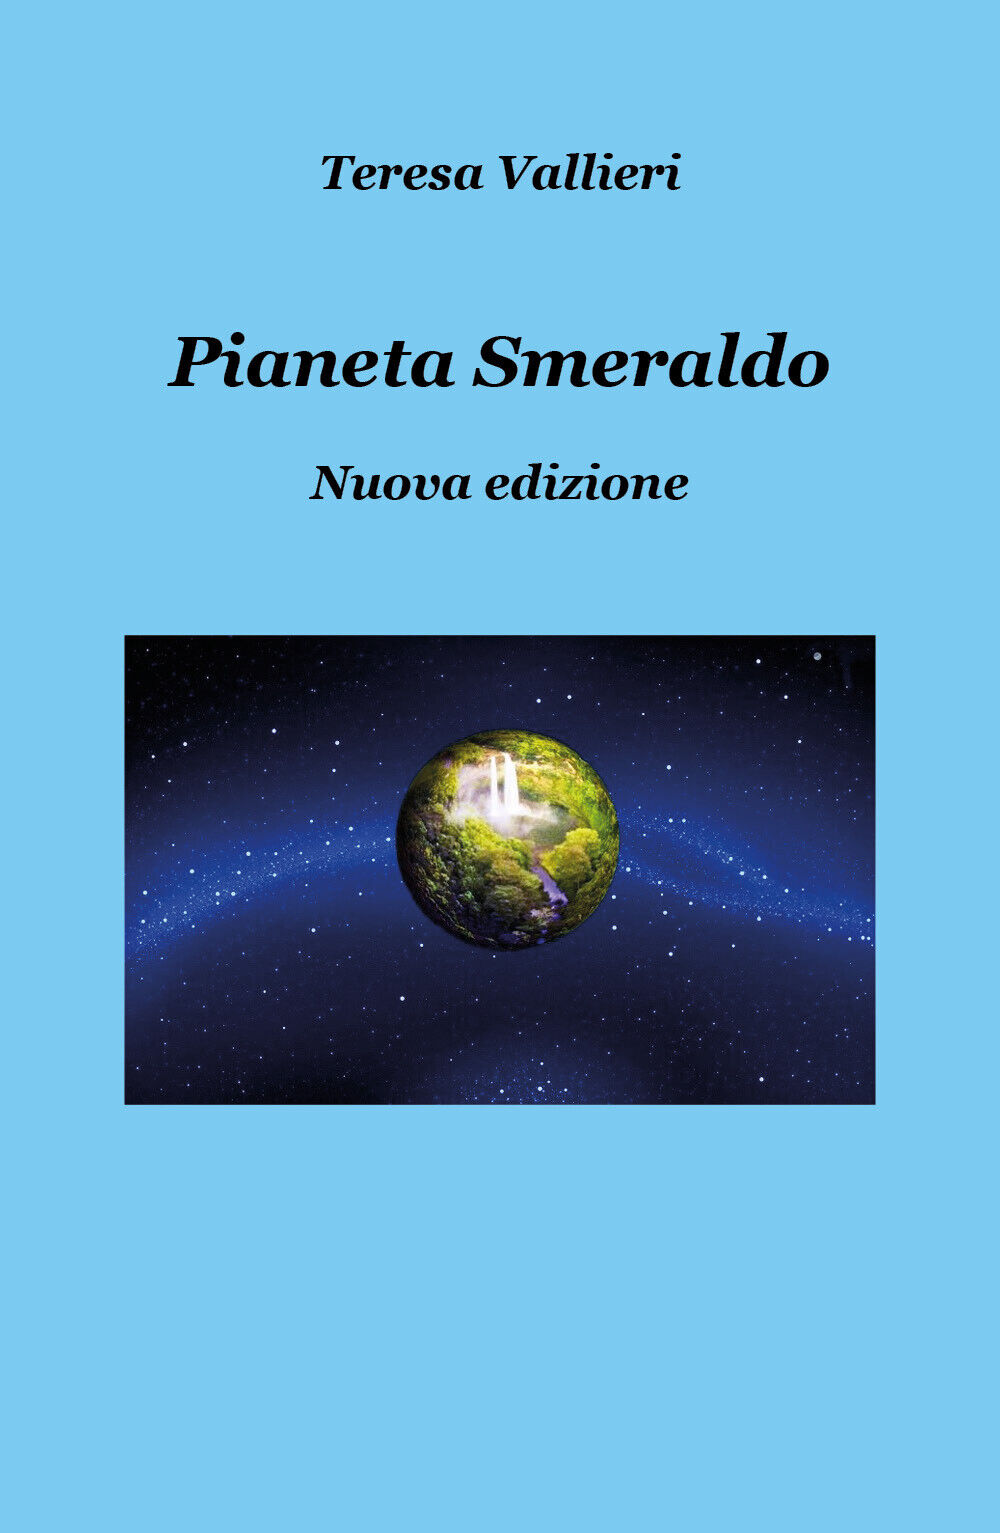 Pianeta smeraldo - Nuova edizione  di Teresa Vallieri,  2019,  Youcanprint